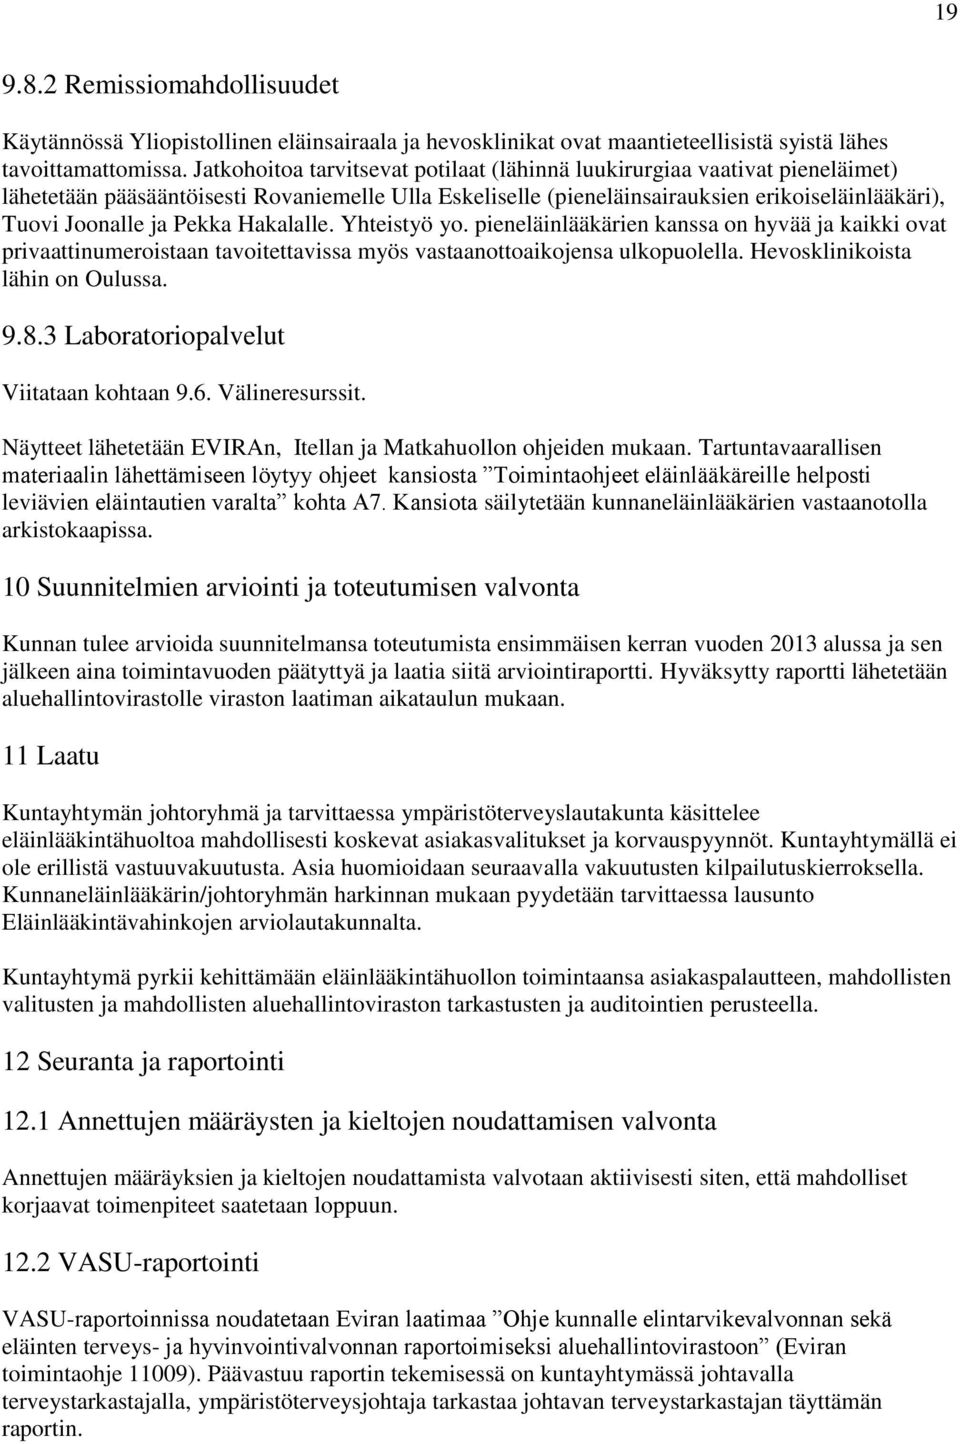 Pekka Hakalalle. Yhteistyö yo. pieneläinlääkärien kanssa on hyvää ja kaikki ovat privaattinumeroistaan tavoitettavissa myös vastaanottoaikojensa ulkopuolella. Hevosklinikoista lähin on Oulussa. 9.8.